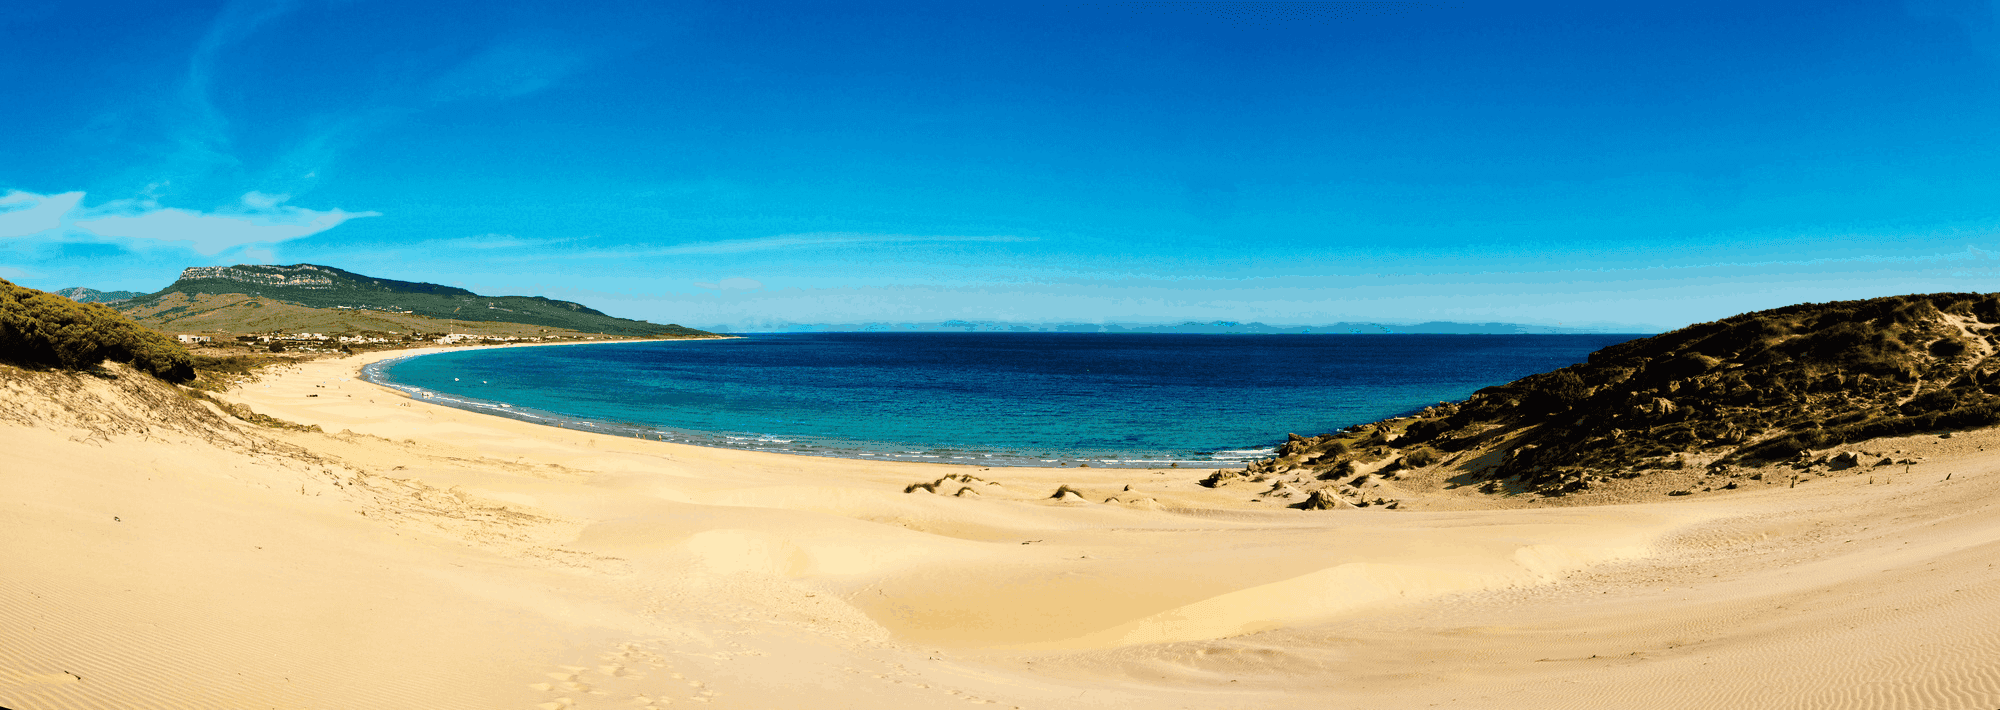 Die schönsten Strände der spanischen Atlantikküste befinden sich an der südlichen Atlantikküste, der Costa de la Luz.